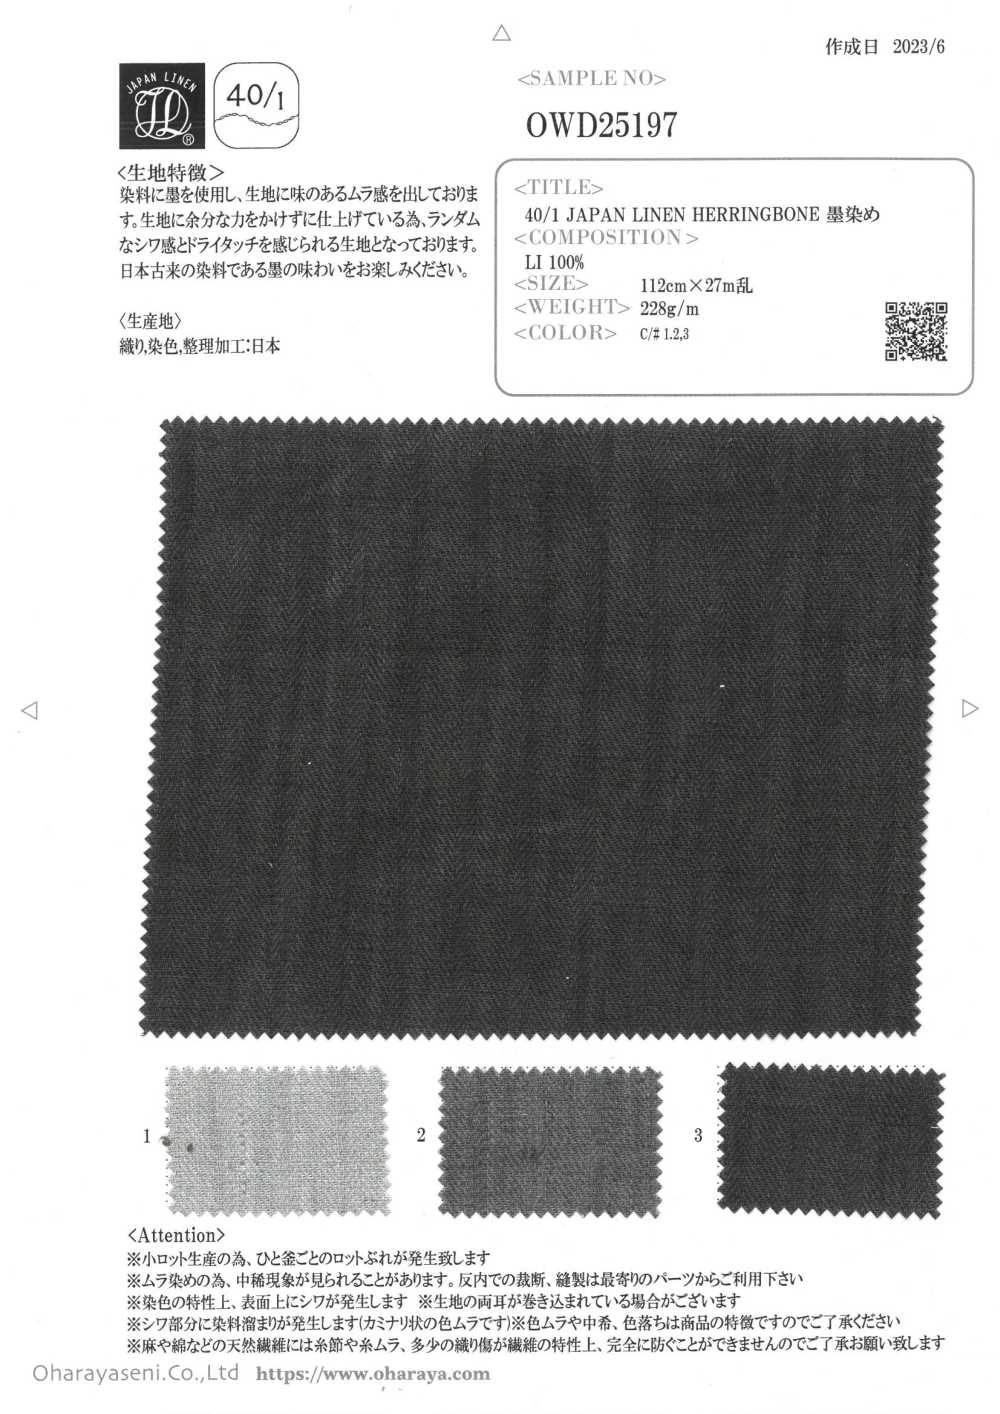 OWD25197 40/1 JAPAN LINEN HERRINGBONE Sumi-dyed[Textile / Fabric] Oharayaseni